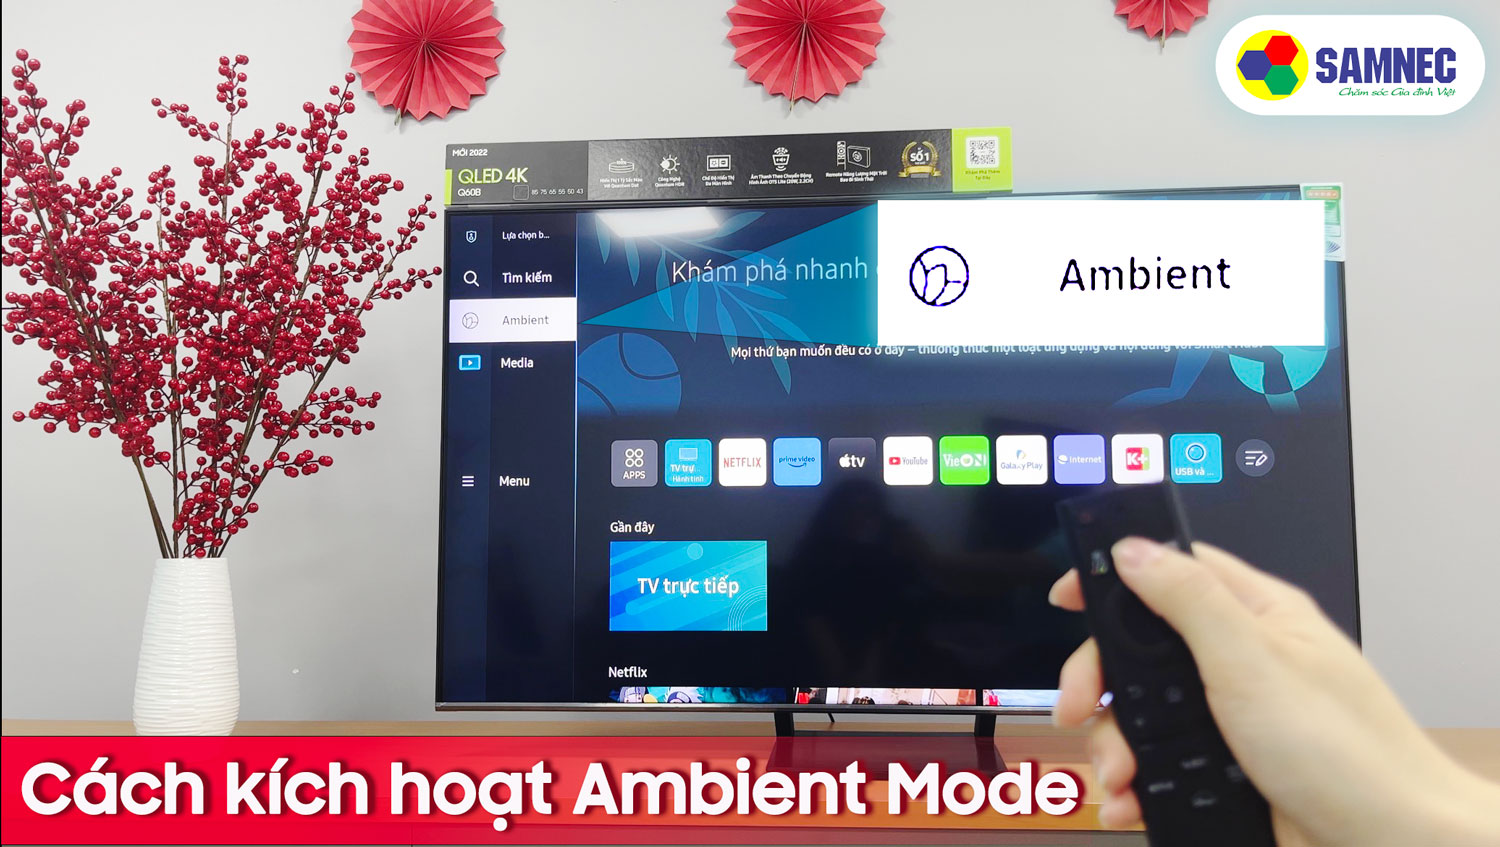 Ambient Mode Smart tivi Samsung giúp bạn bật tivi thành bộ phim treo tường tuyệt đẹp. Chiếc tivi của bạn sẽ trở thành một phần không thể thiếu của không gian sống của gia đình.